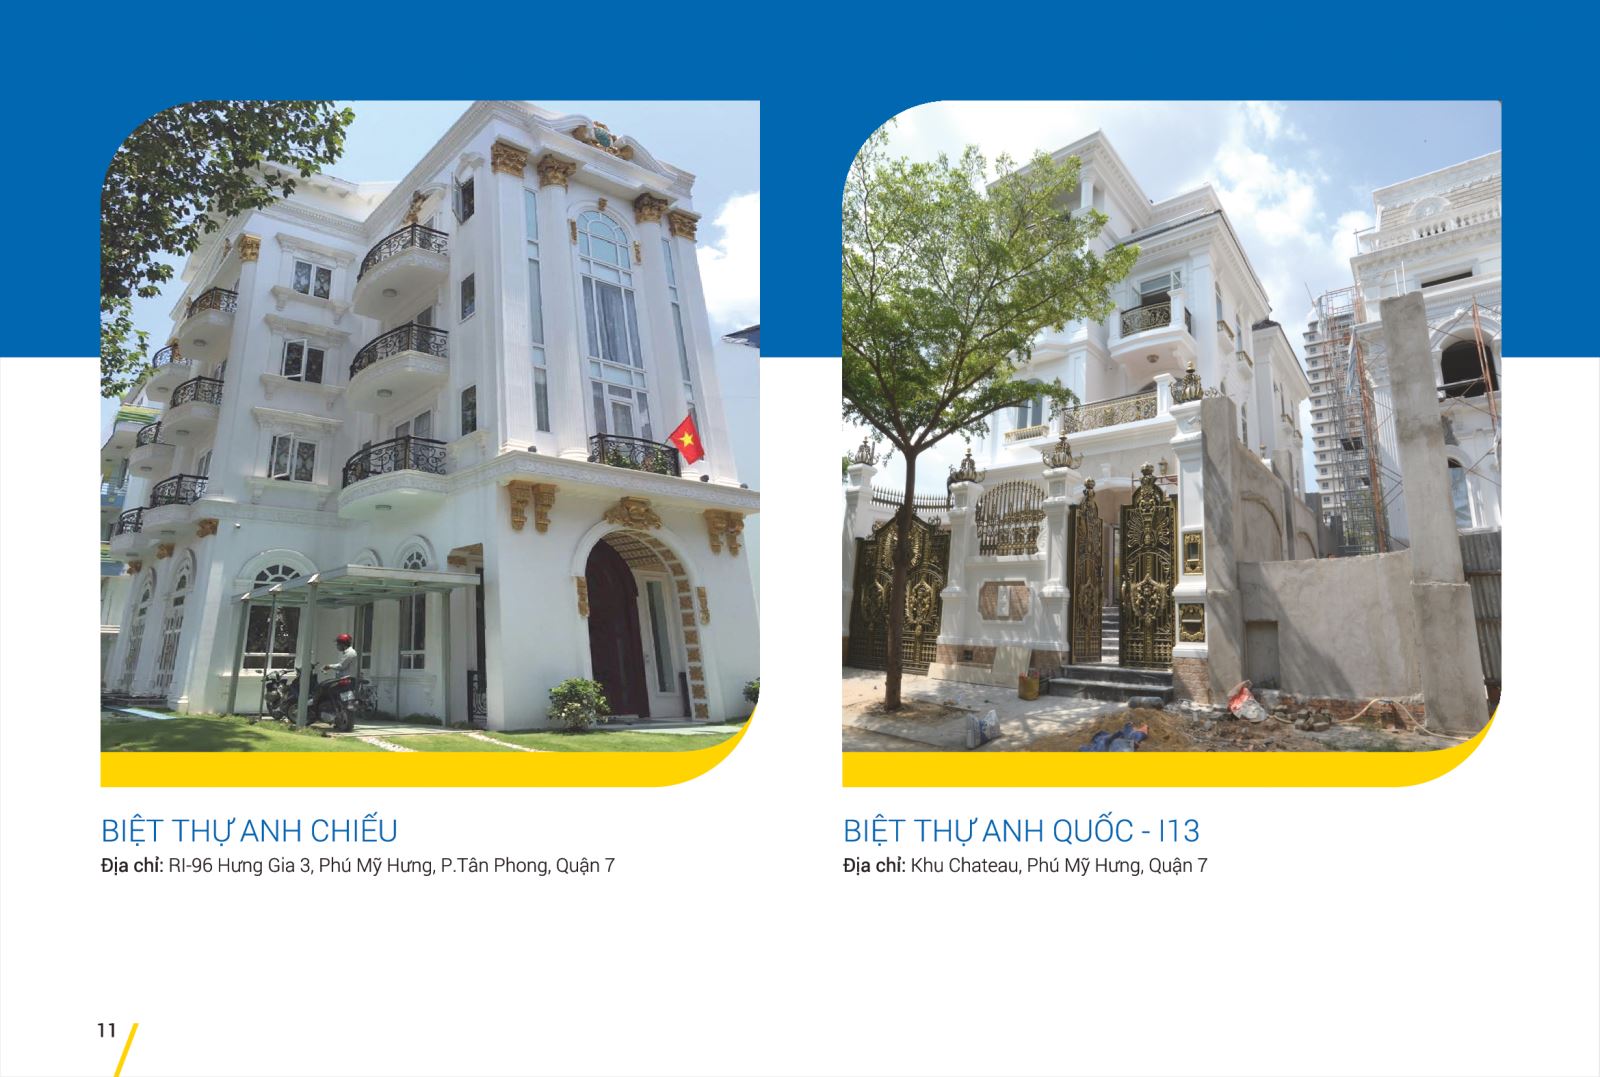 Hồ sơ năng lực công ty Cơ Điện Nhiệt Lạnh Việt Nam - VINA ENGINEER